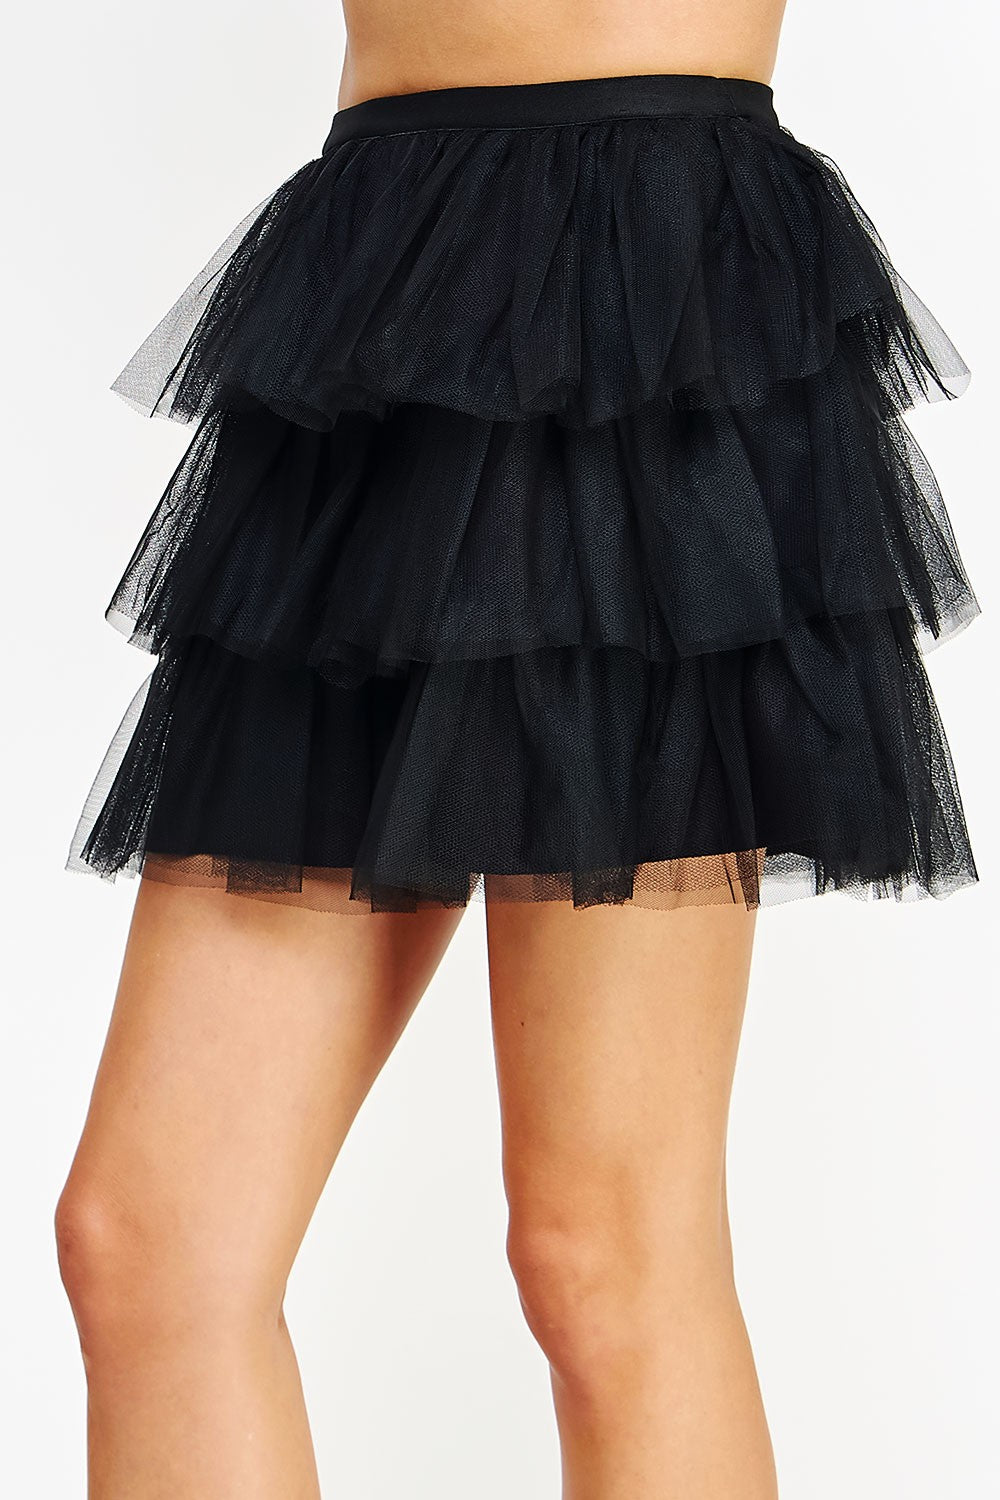 Black Tulle Frills Mini Skirt